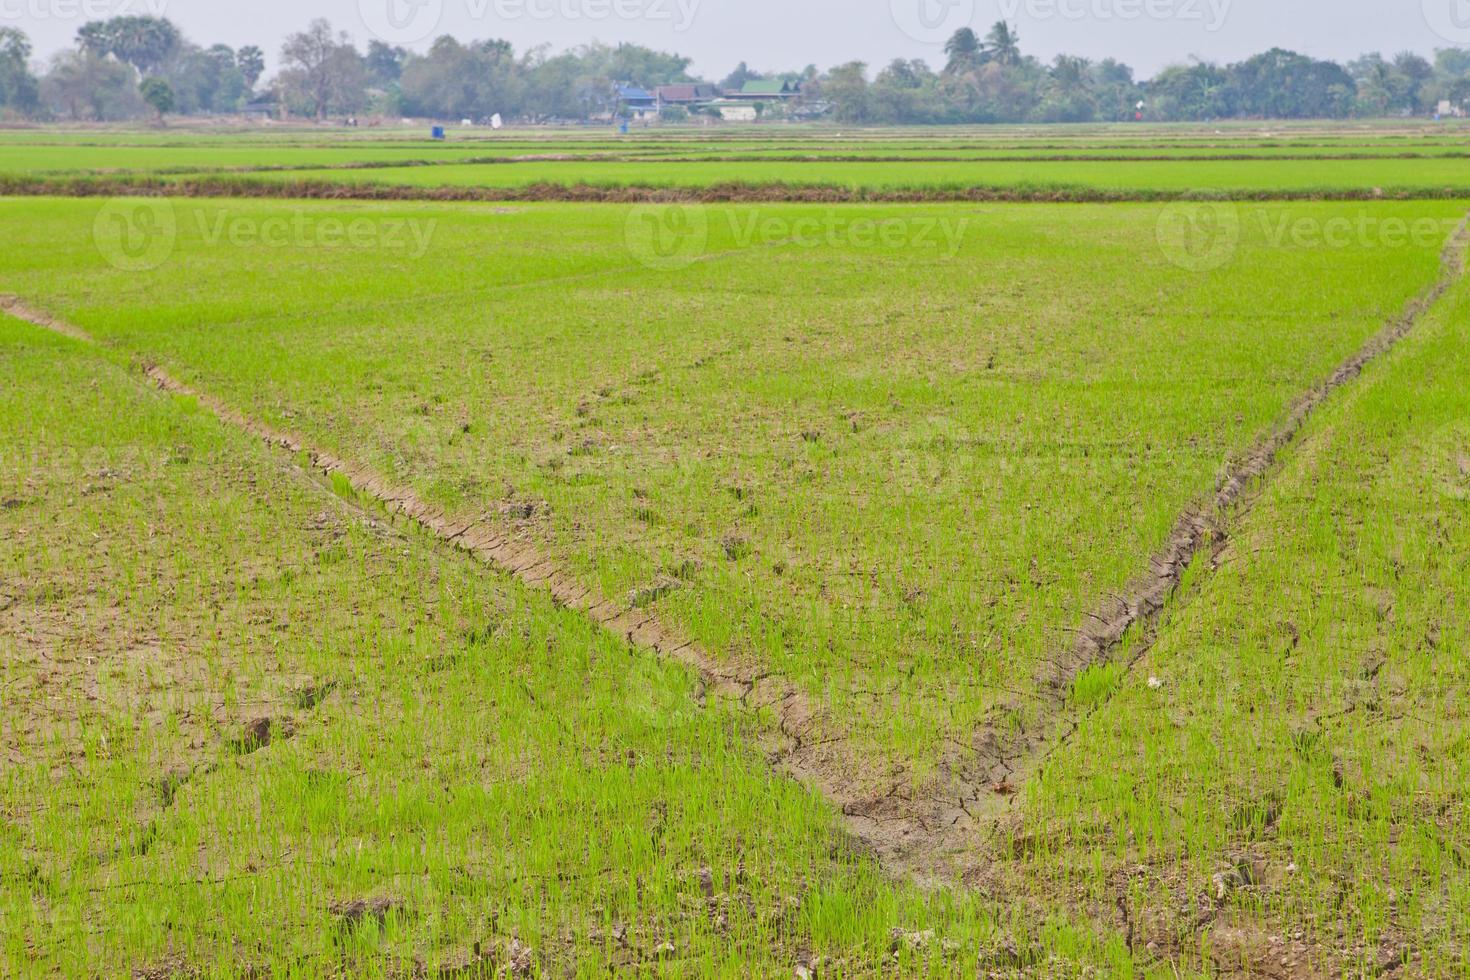 campo di riso in thailandia foto